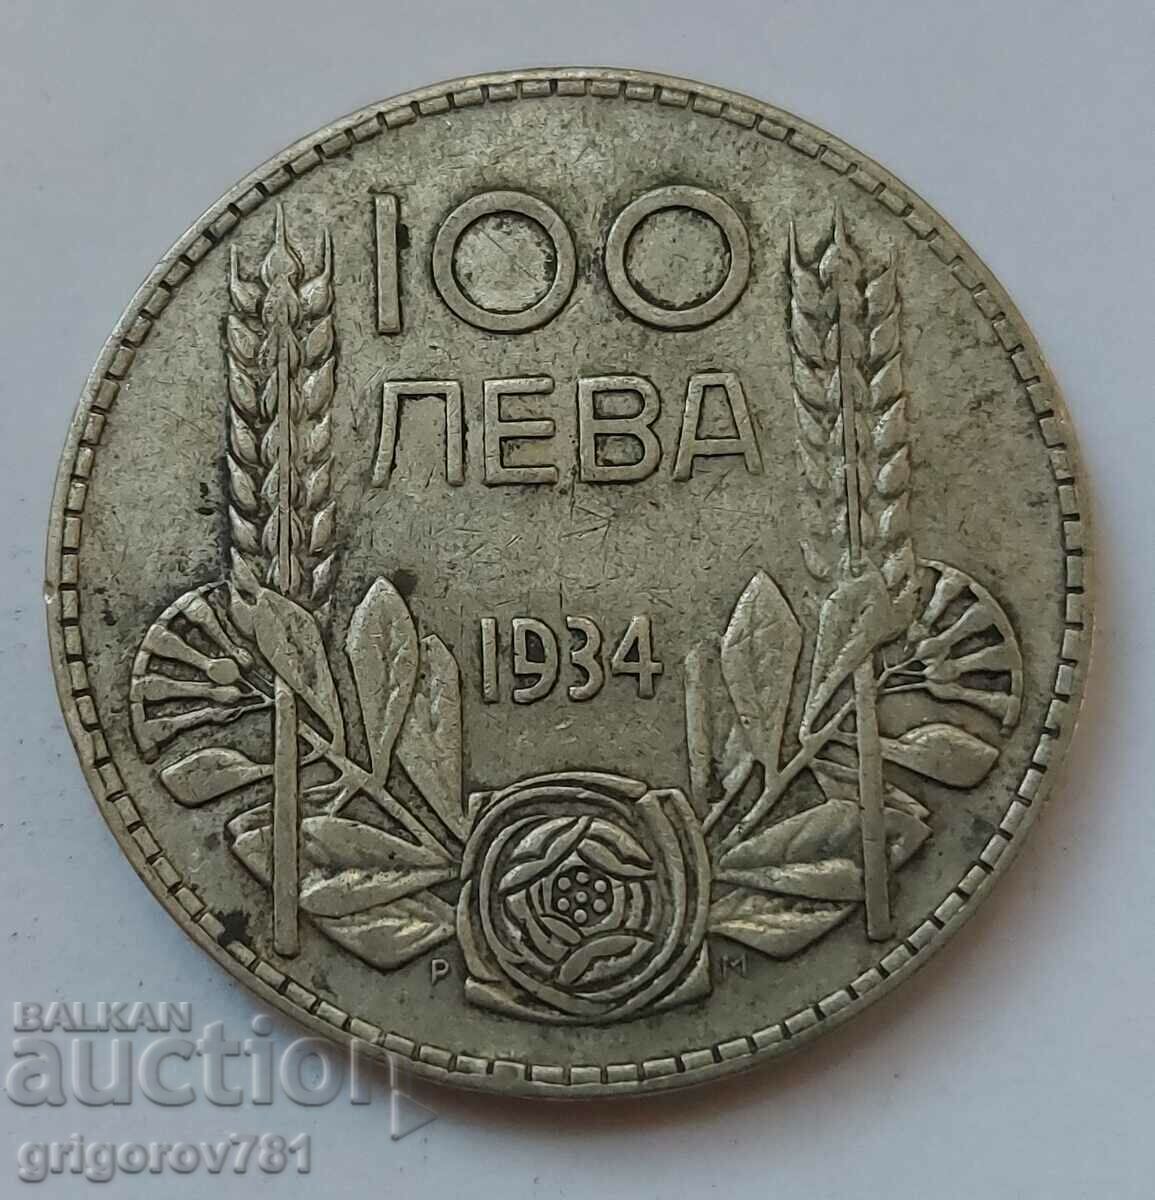 Ασήμι 100 λέβα Βουλγαρία 1934 - ασημένιο νόμισμα #92